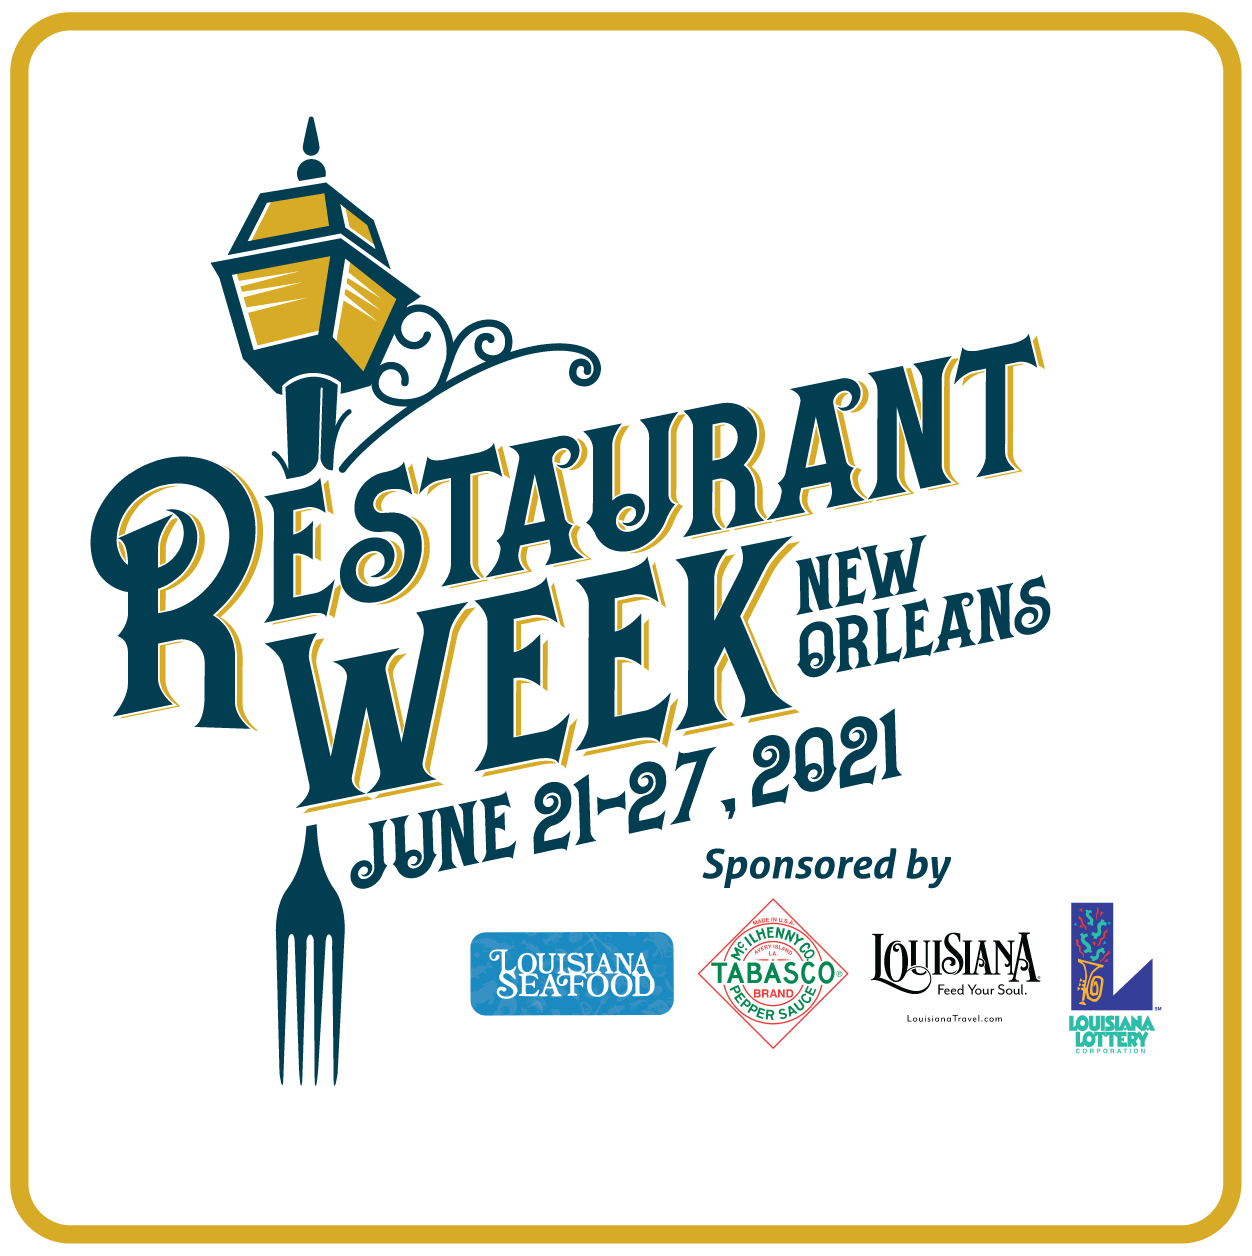 Restaurant Week New Orleans